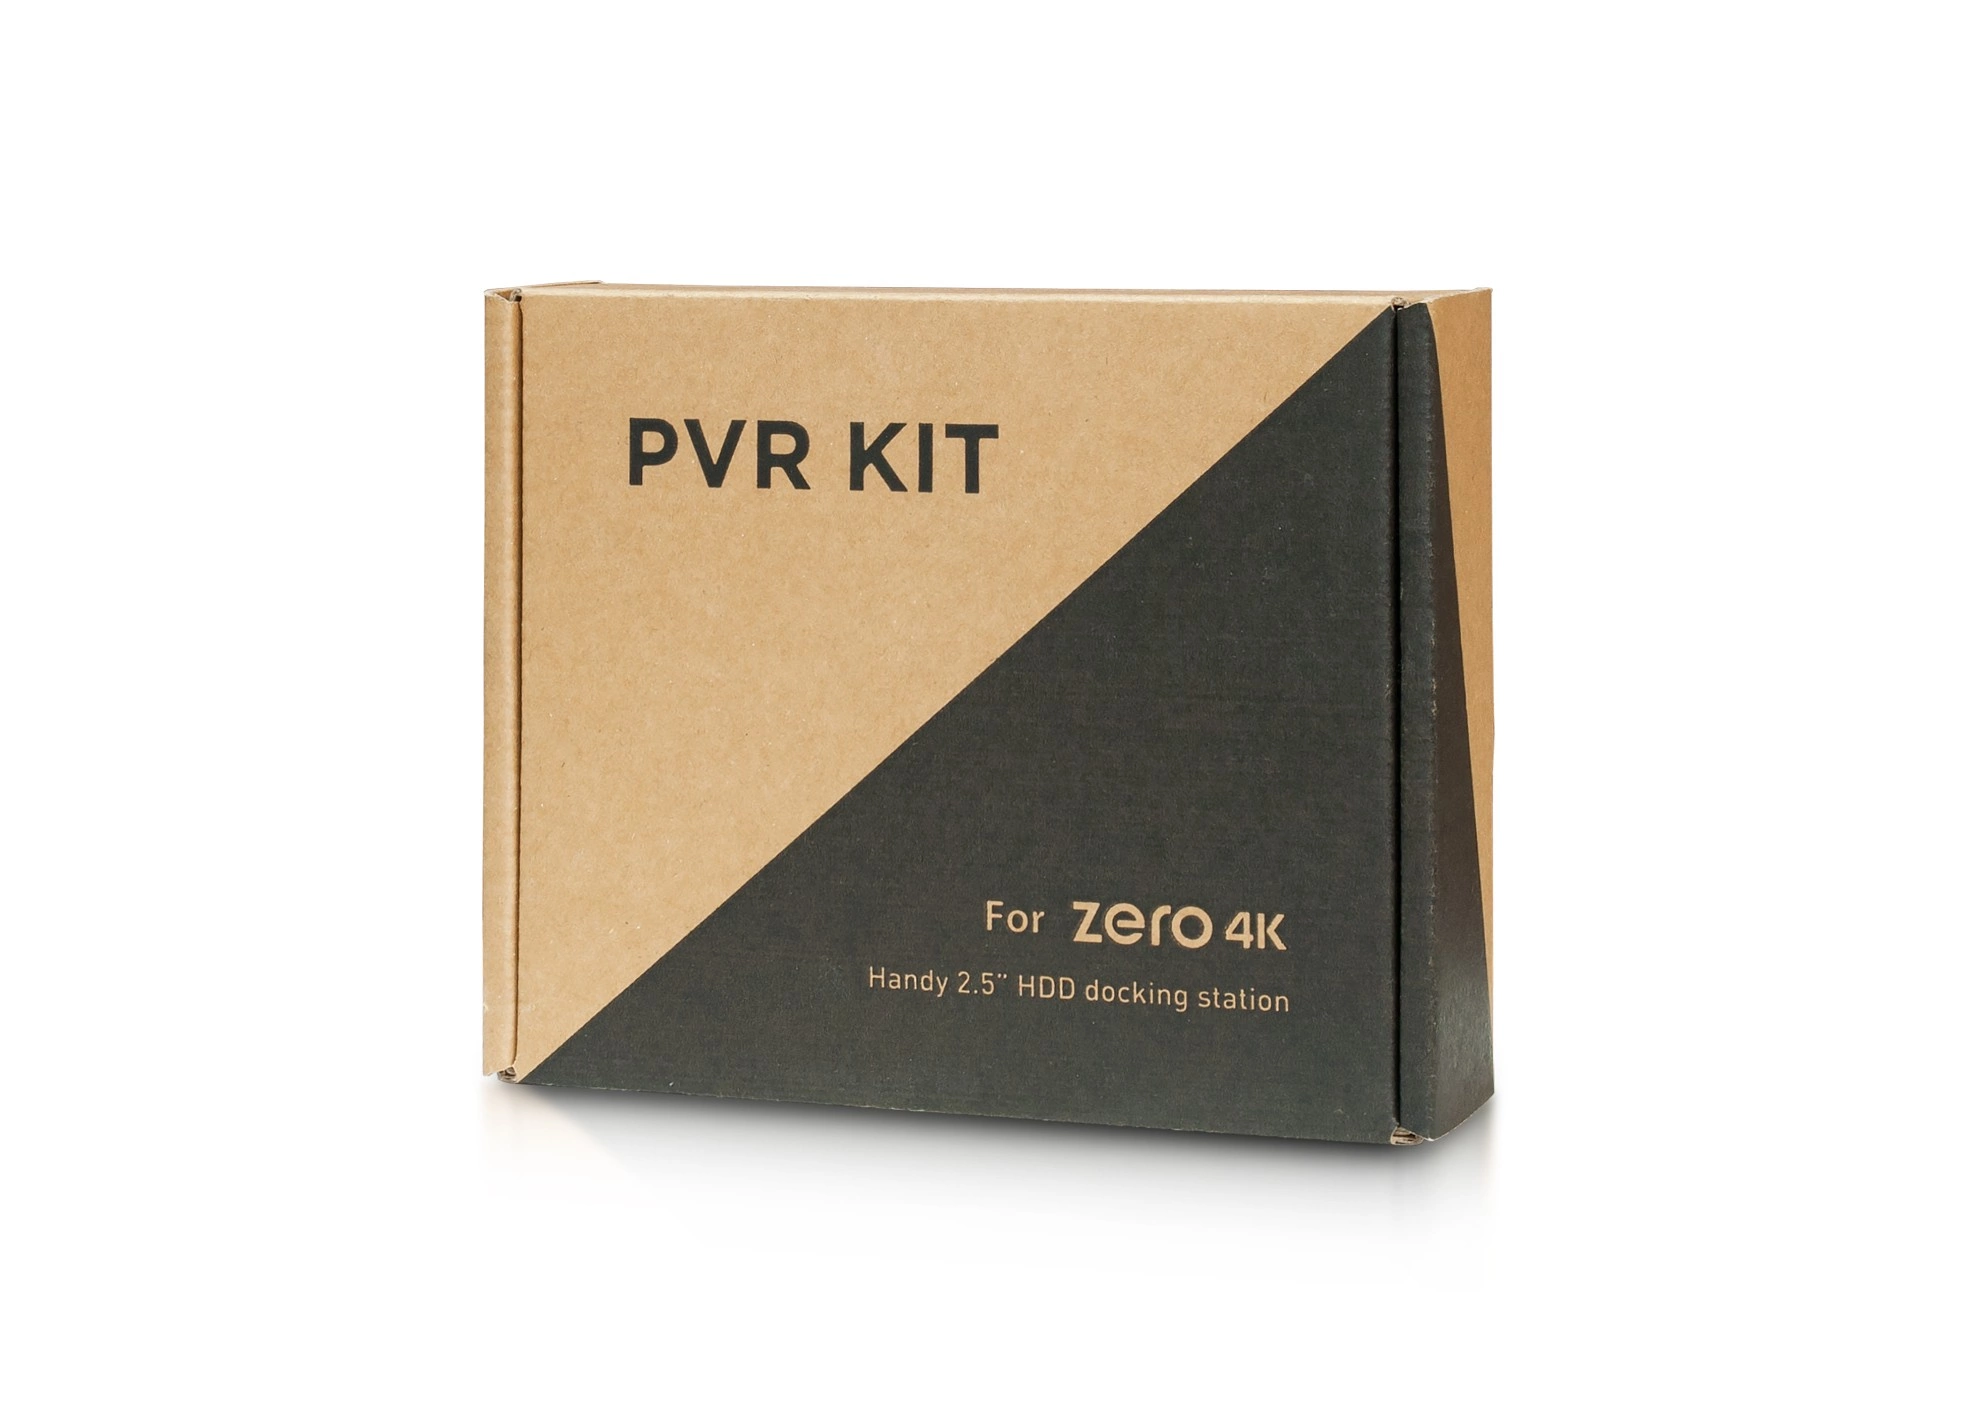 PVR KIT for VU+ ZERO 4K